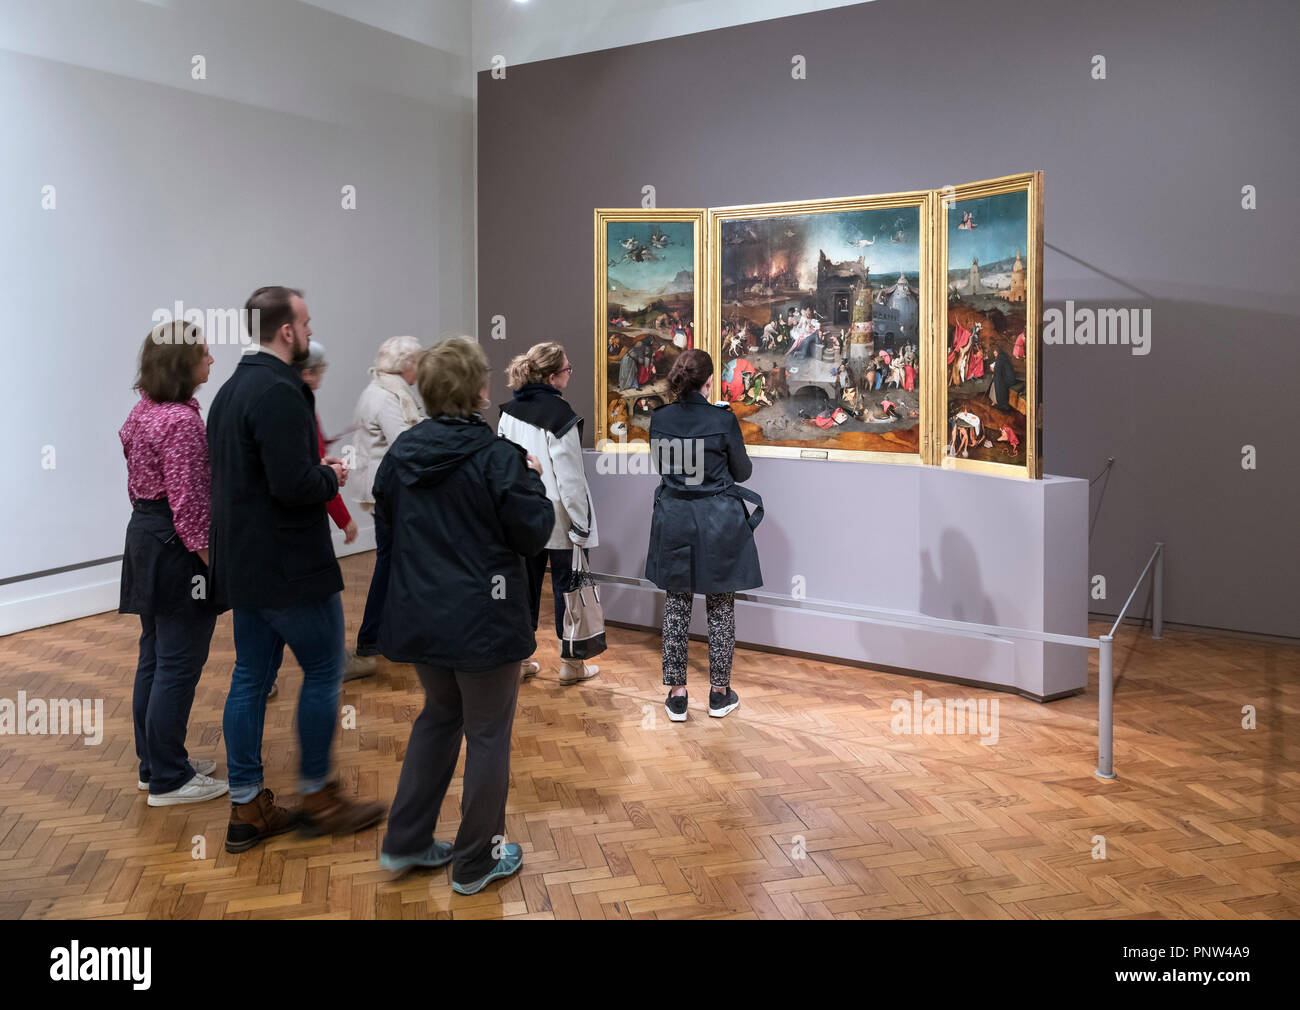 Visiteurs regardant le tableau "la tentation de St Anthony" de Hieronymus Bosch, Museu Nacional de Arte Antiga, Lisbonne, Portugal Banque D'Images